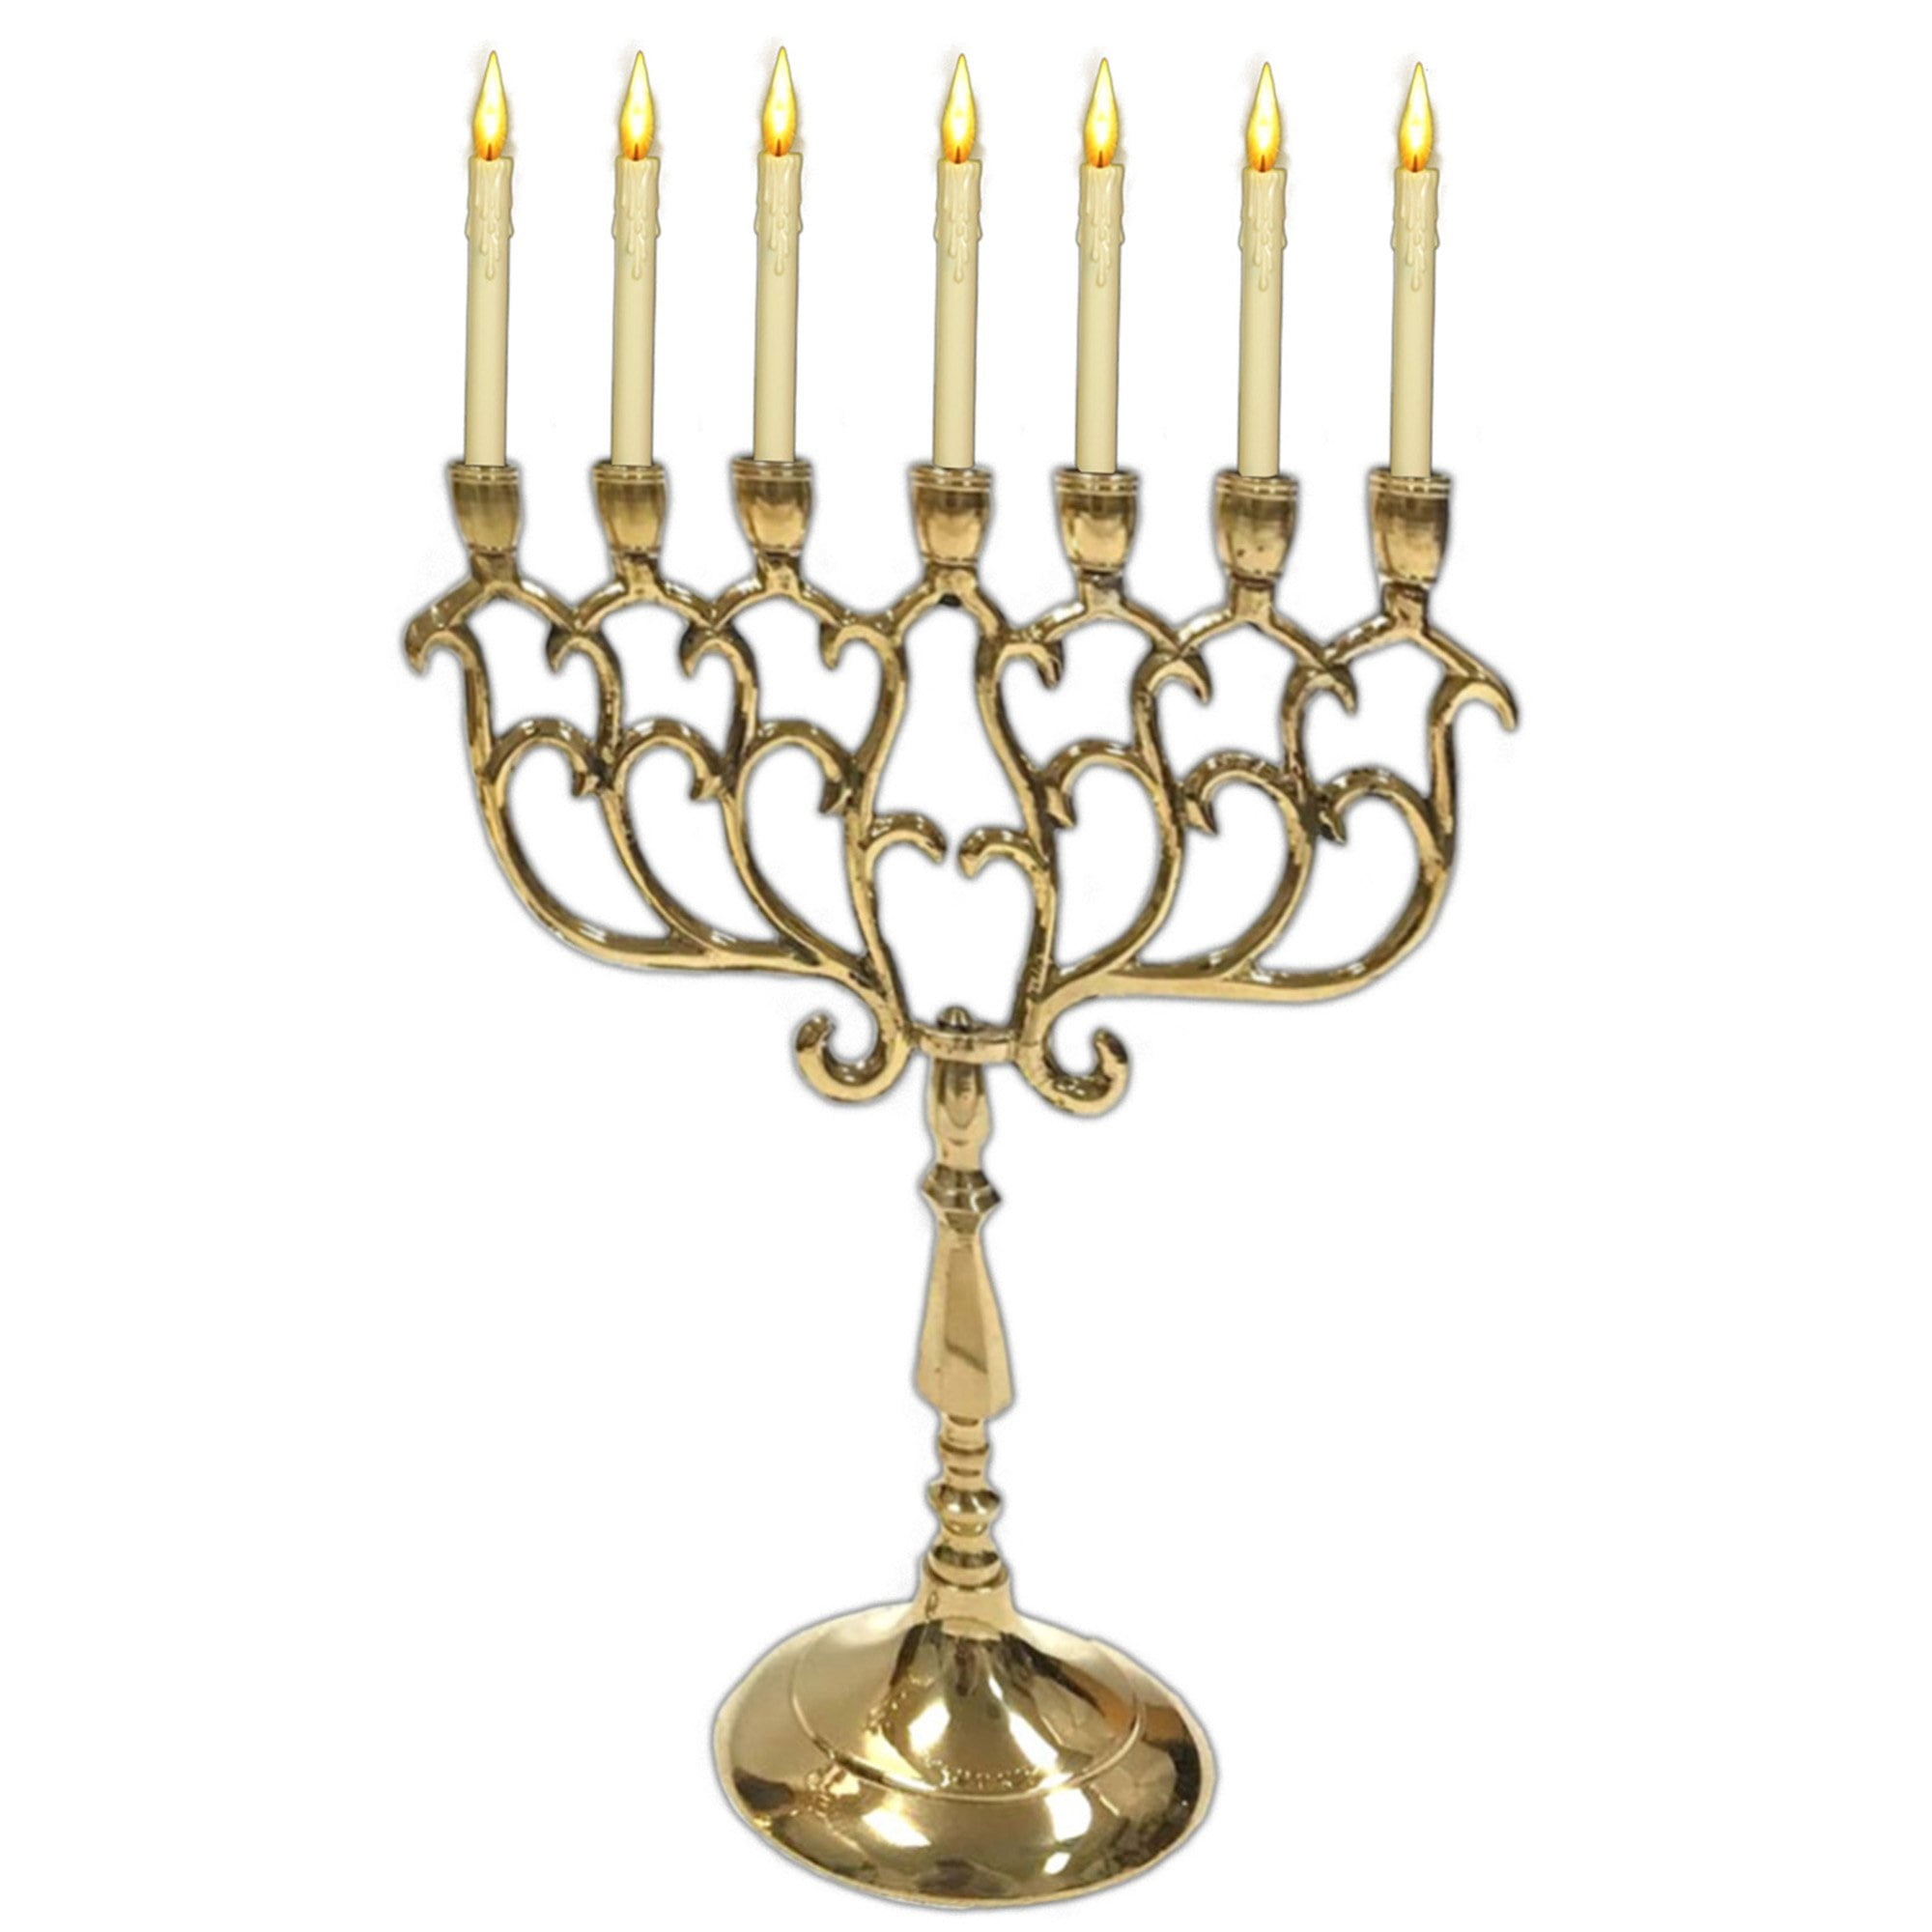 Biedermann & Sons Nickel/Brass Ornate Menorah Candle